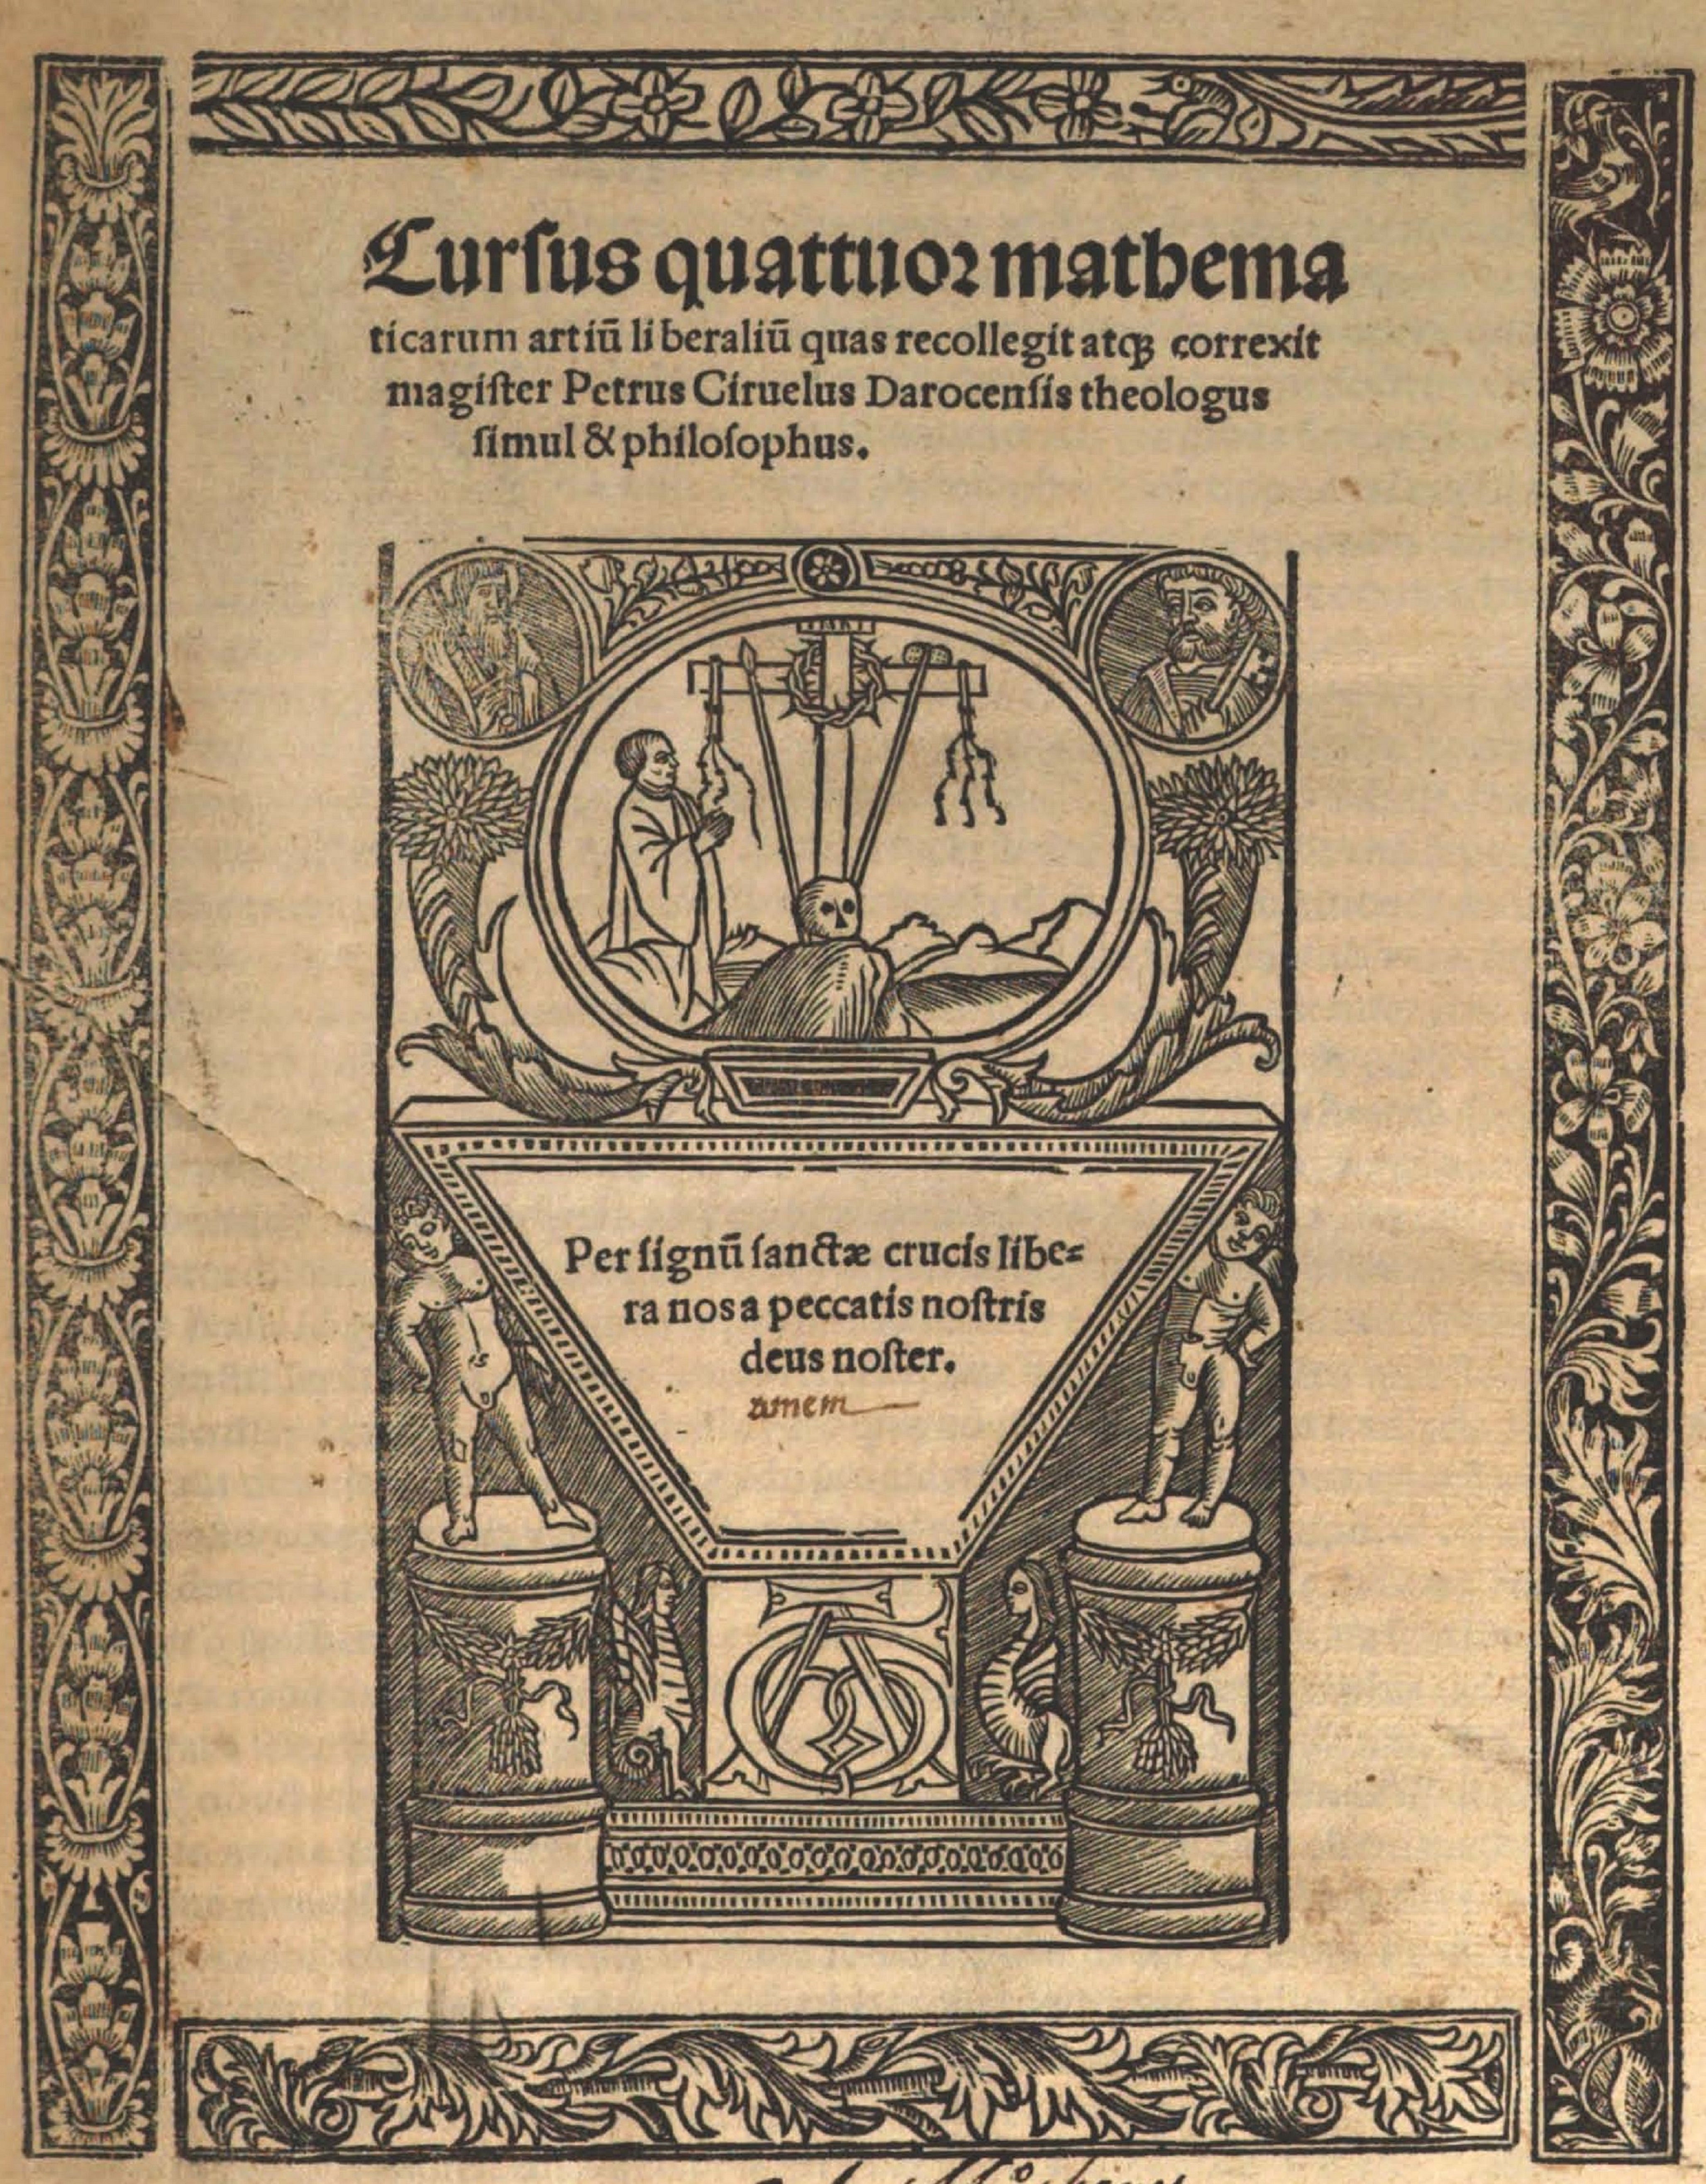 06- Pedro Sánchez Ciruelo. Cursus quatuor mathematicarum, 1516